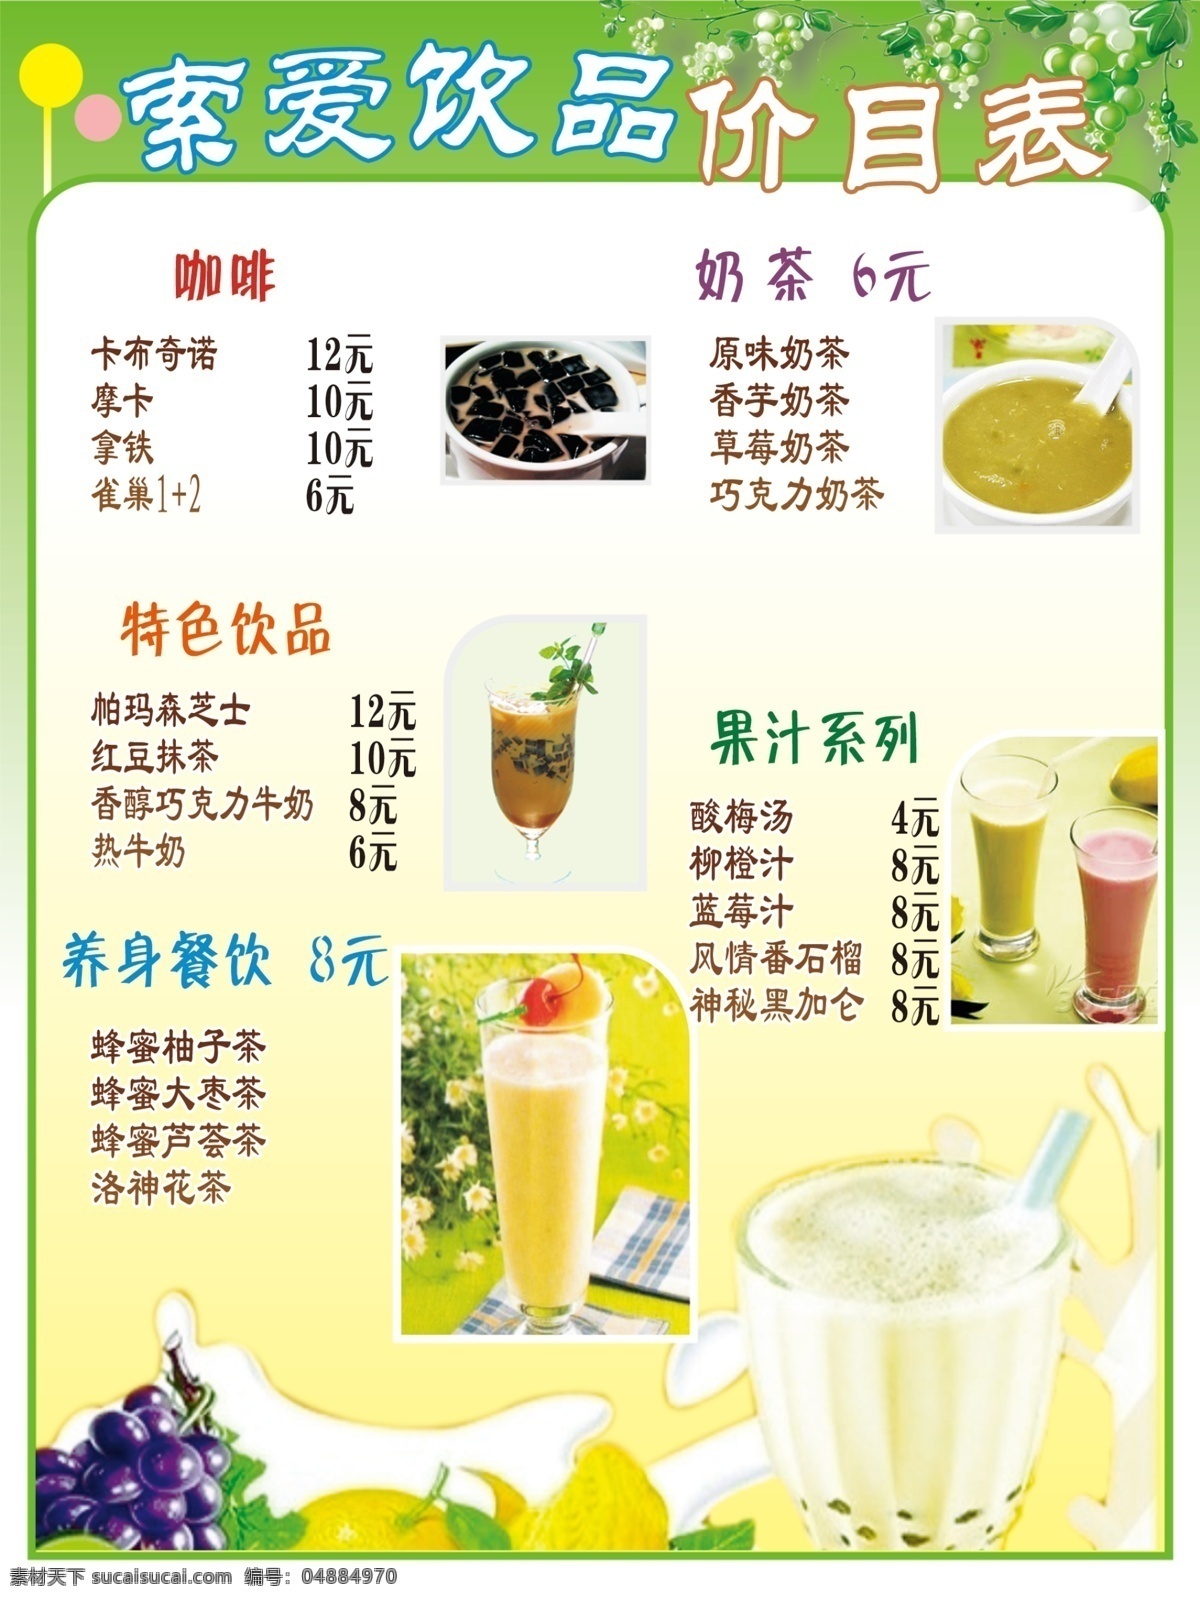 饮品价格表 饮品 价格表 价目表 水果 奶茶 果汁 绿色 树叶 菜单菜谱 广告设计模板 源文件